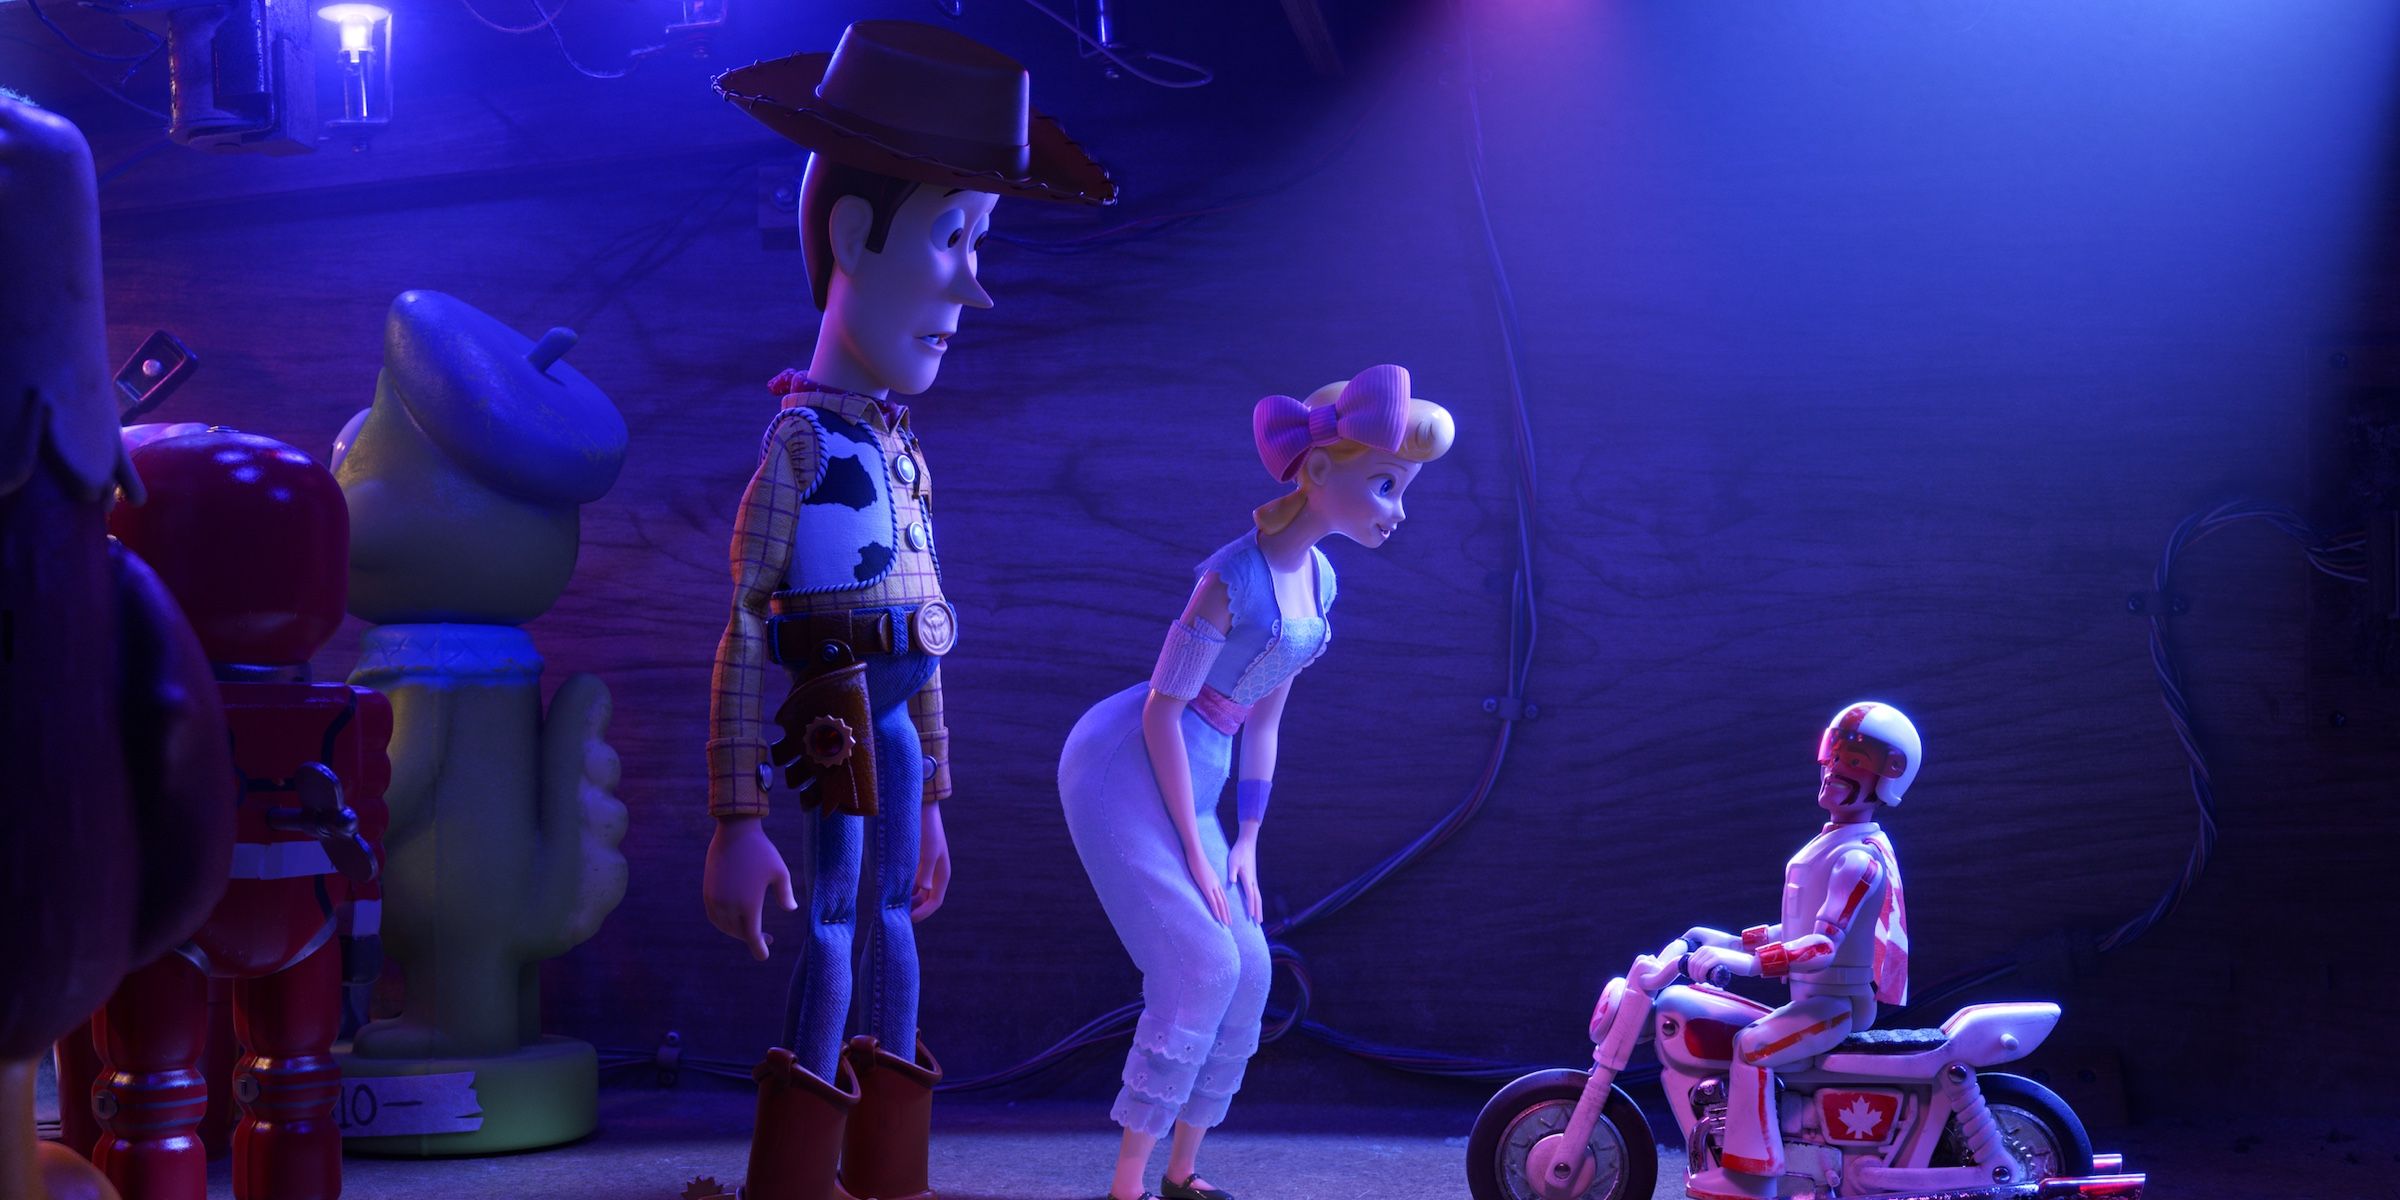 El tráiler final de Toy Story 4 destaca Duke Caboom y momentos cómicos